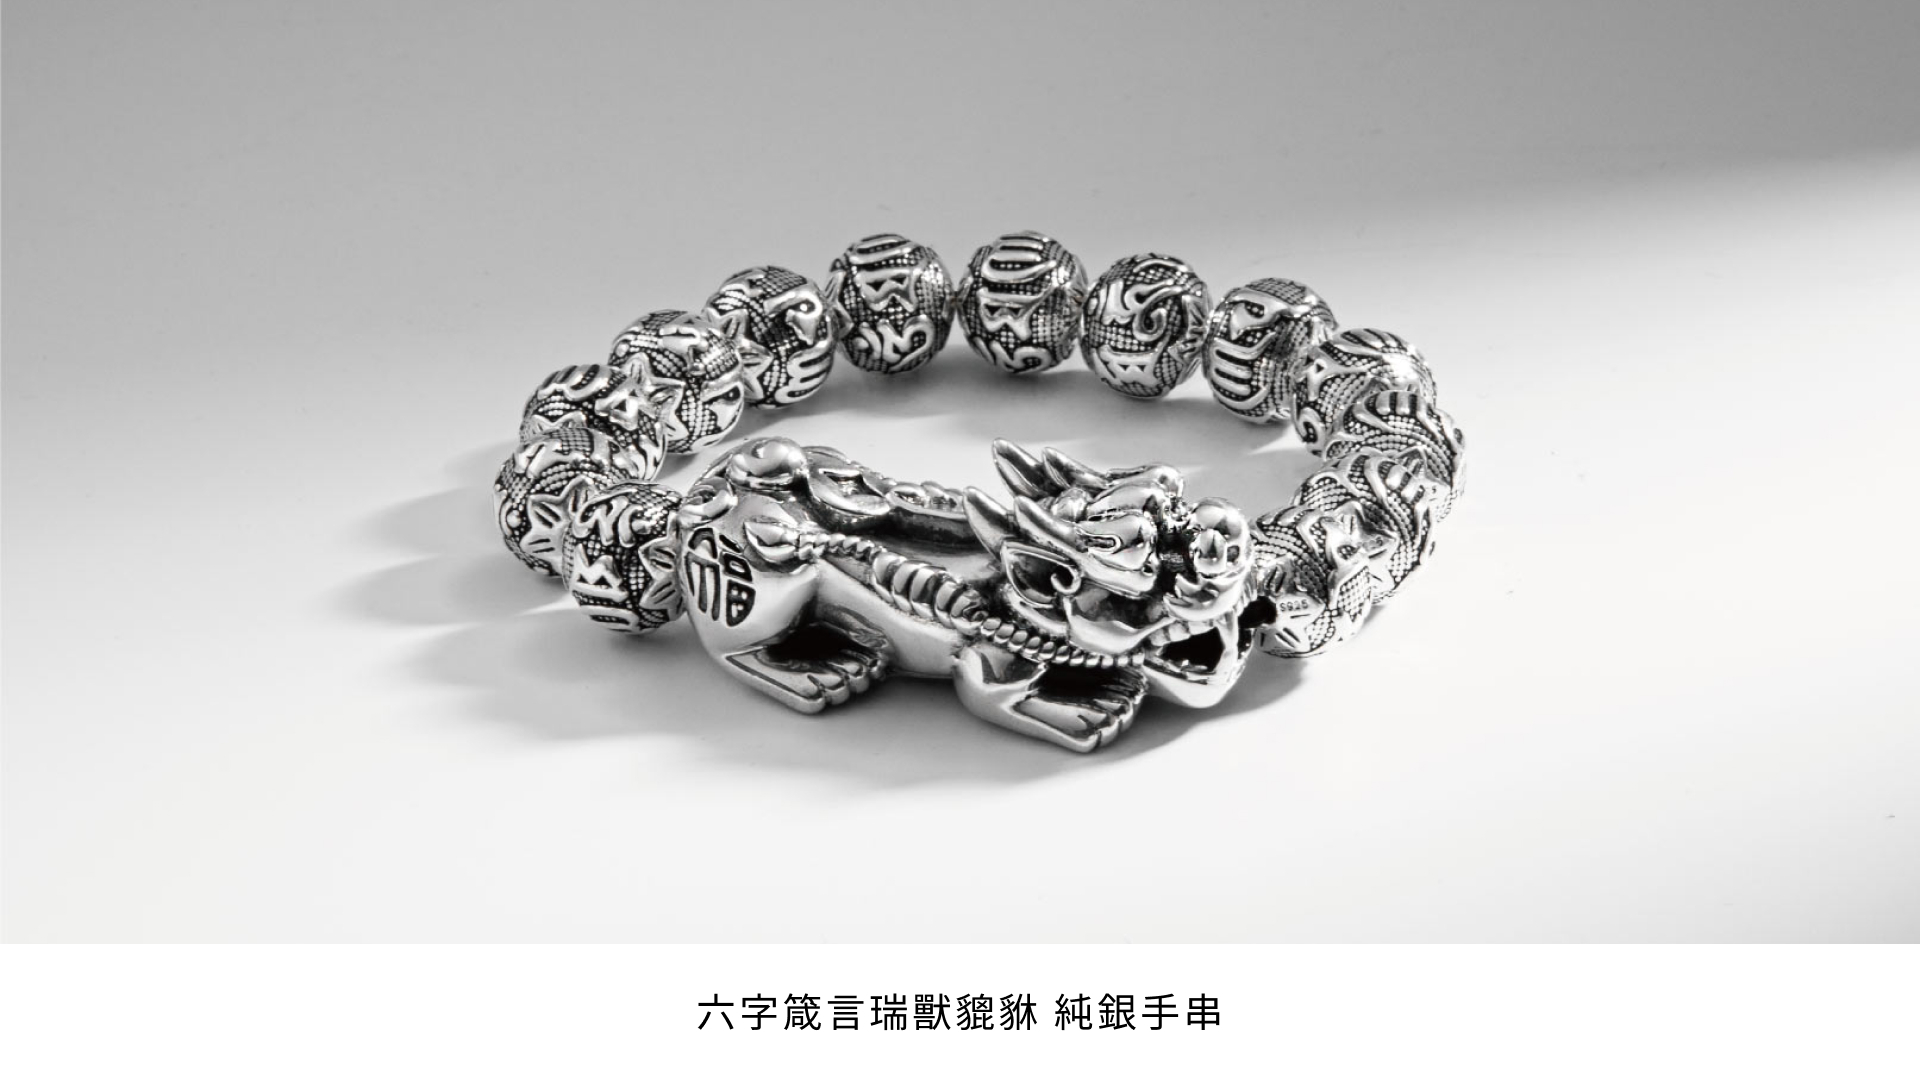 六字箴言瑞獸貔貅純銀手串，精緻的純銀珠子上刻有六字箴言，手串中央是一隻雕刻精美的貔貅，象徵著吉祥和財富。